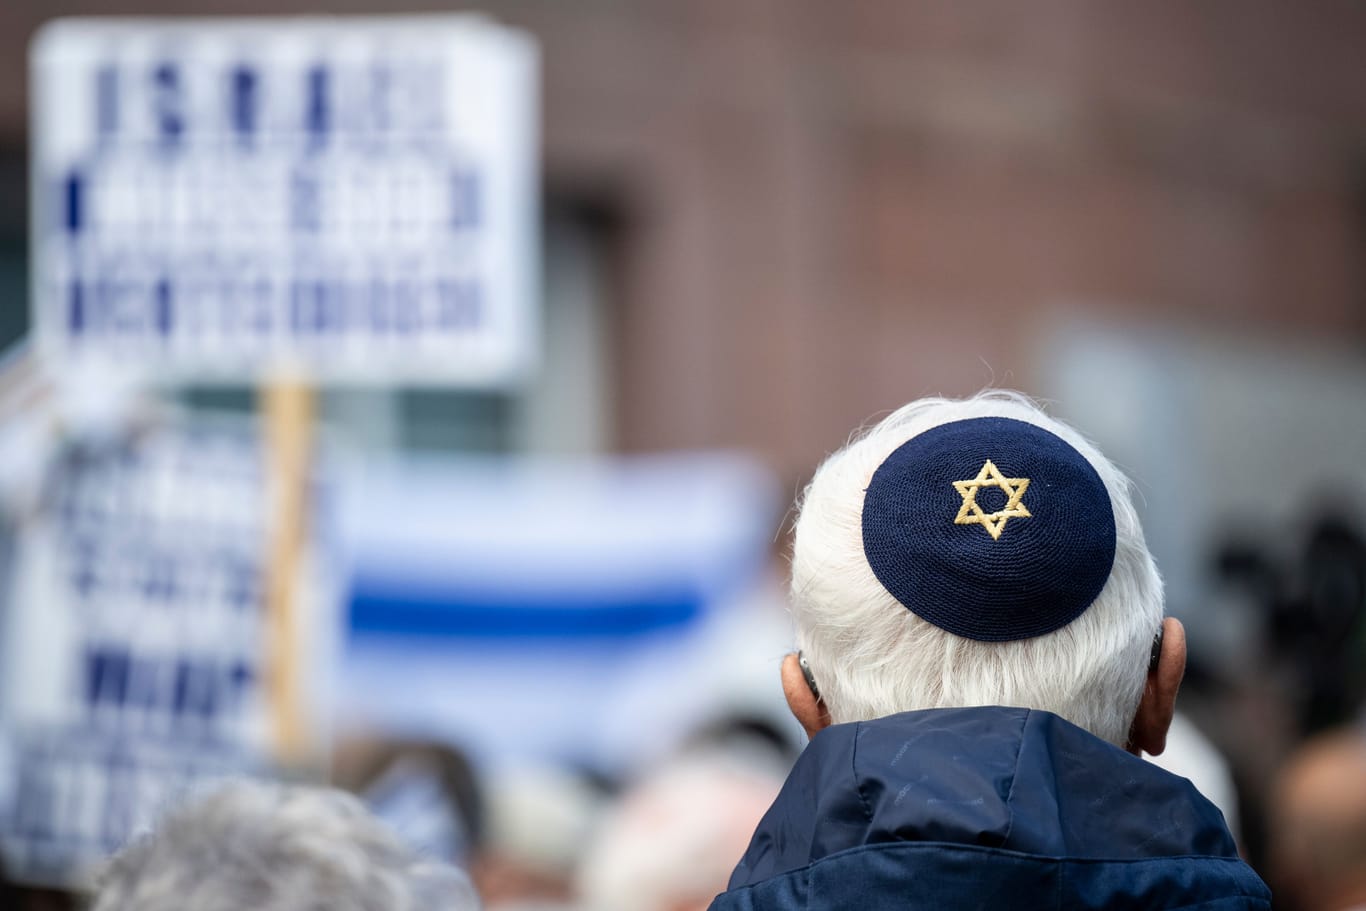 Pro-Israel-Kundgebung (Archivbild): Der Antisemitismus muss effektiver bekämpft werden, fordert Josef Schuster.